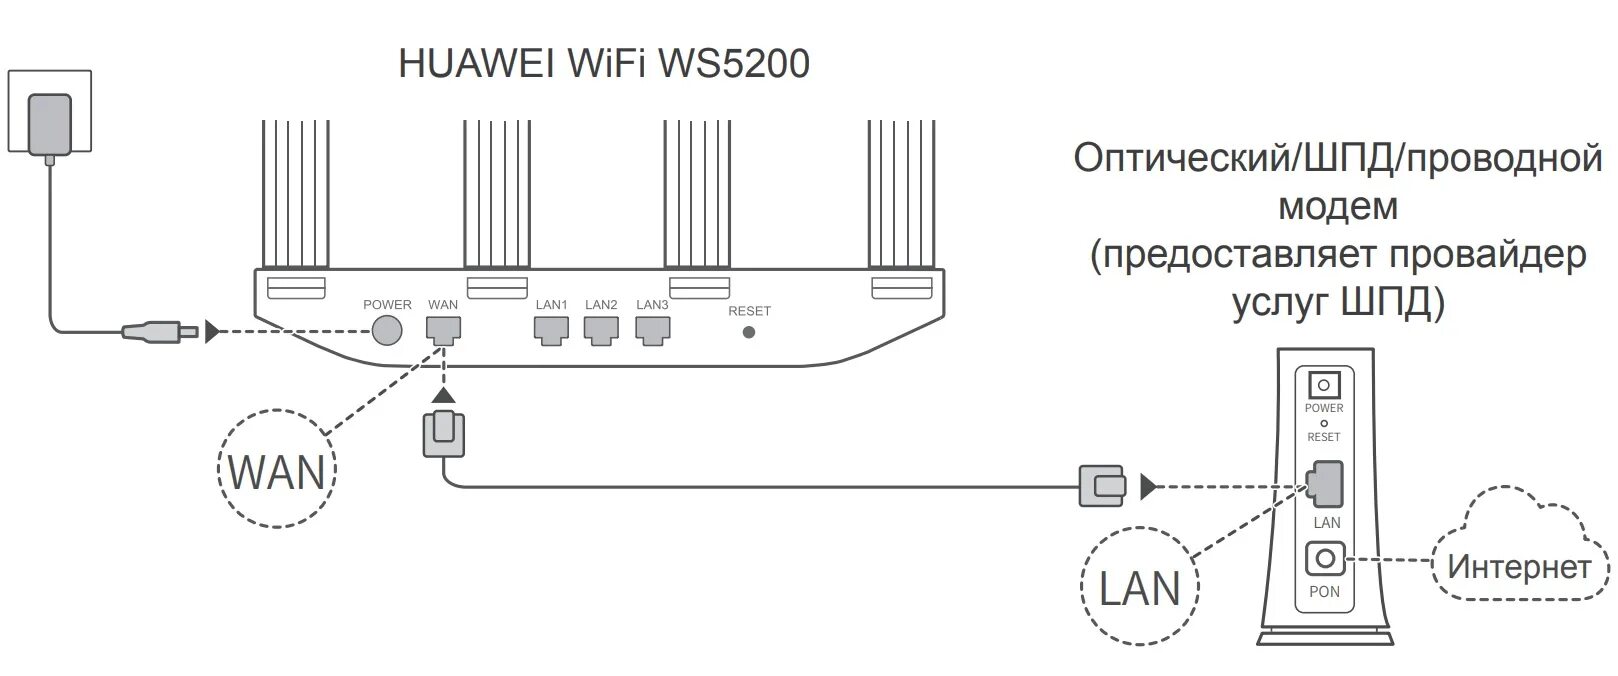 Как подключить роутер huawei. Huawei WIFI ws5200. Wi-Fi роутер Huawei ax2 ws7001. Wi-Fi роутер Huawei ws5200 v3. Схема подключения роутер Huawei.